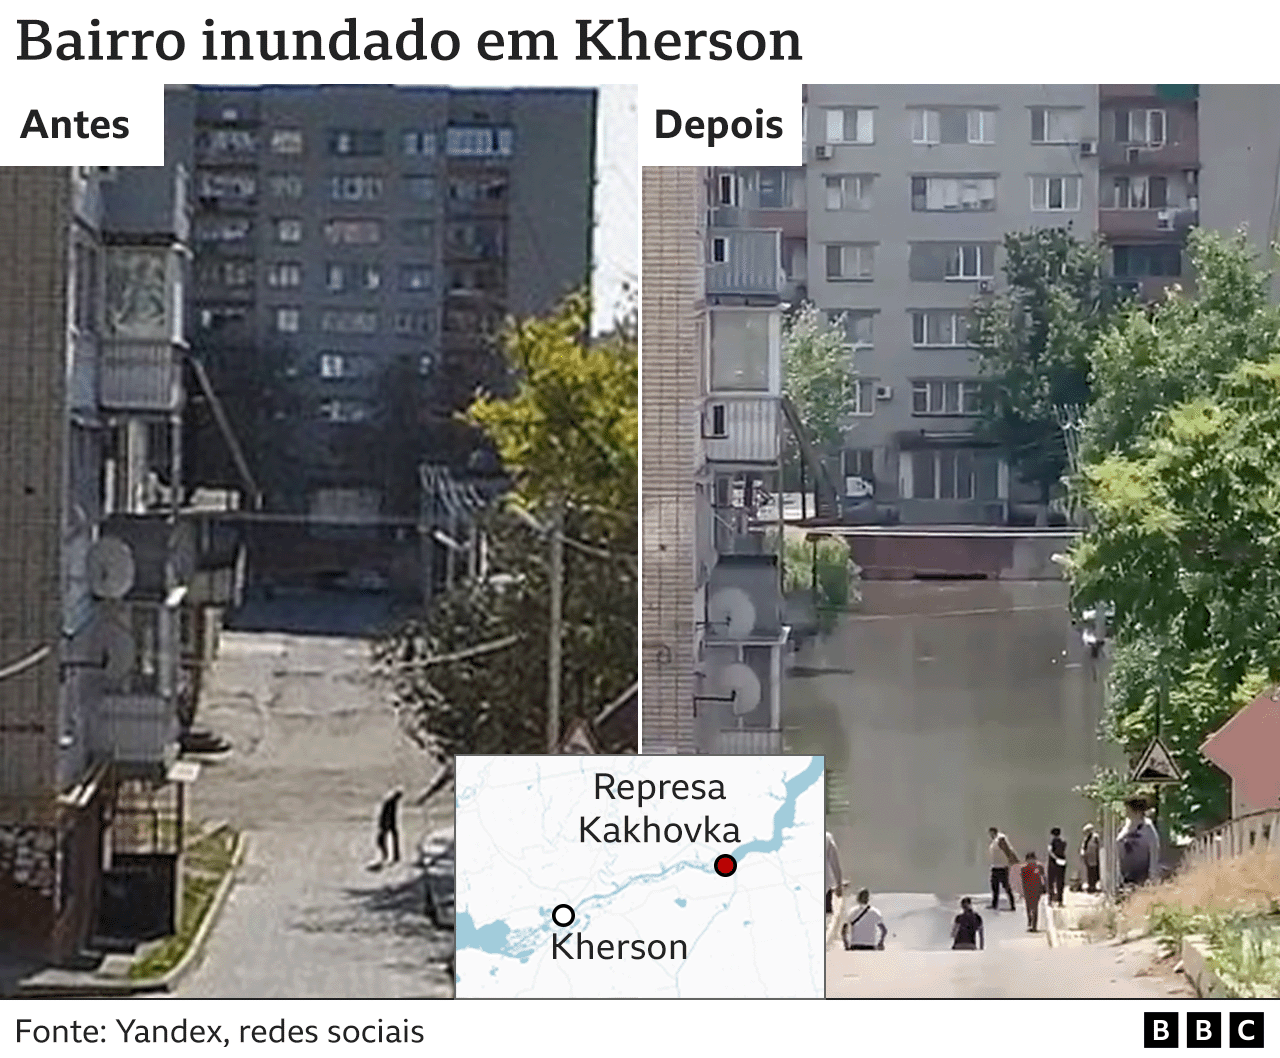 Imagens mostram antes e depois de bairro inundado em Kherson